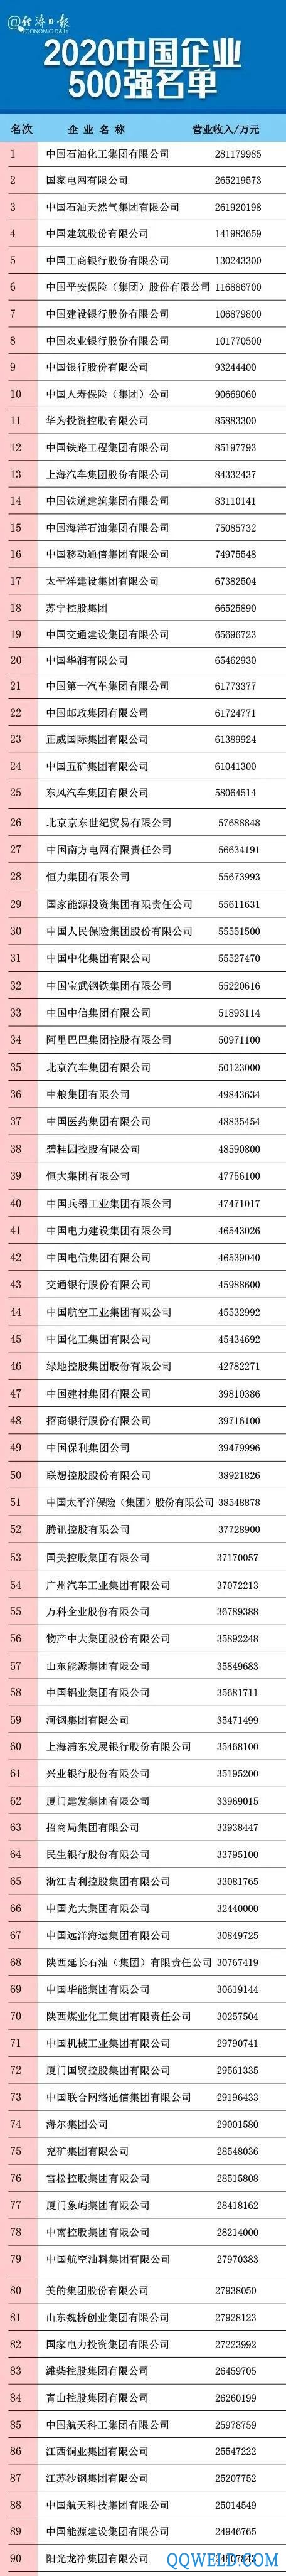 2020中国企业500强榜单揭晓，附全部名单！